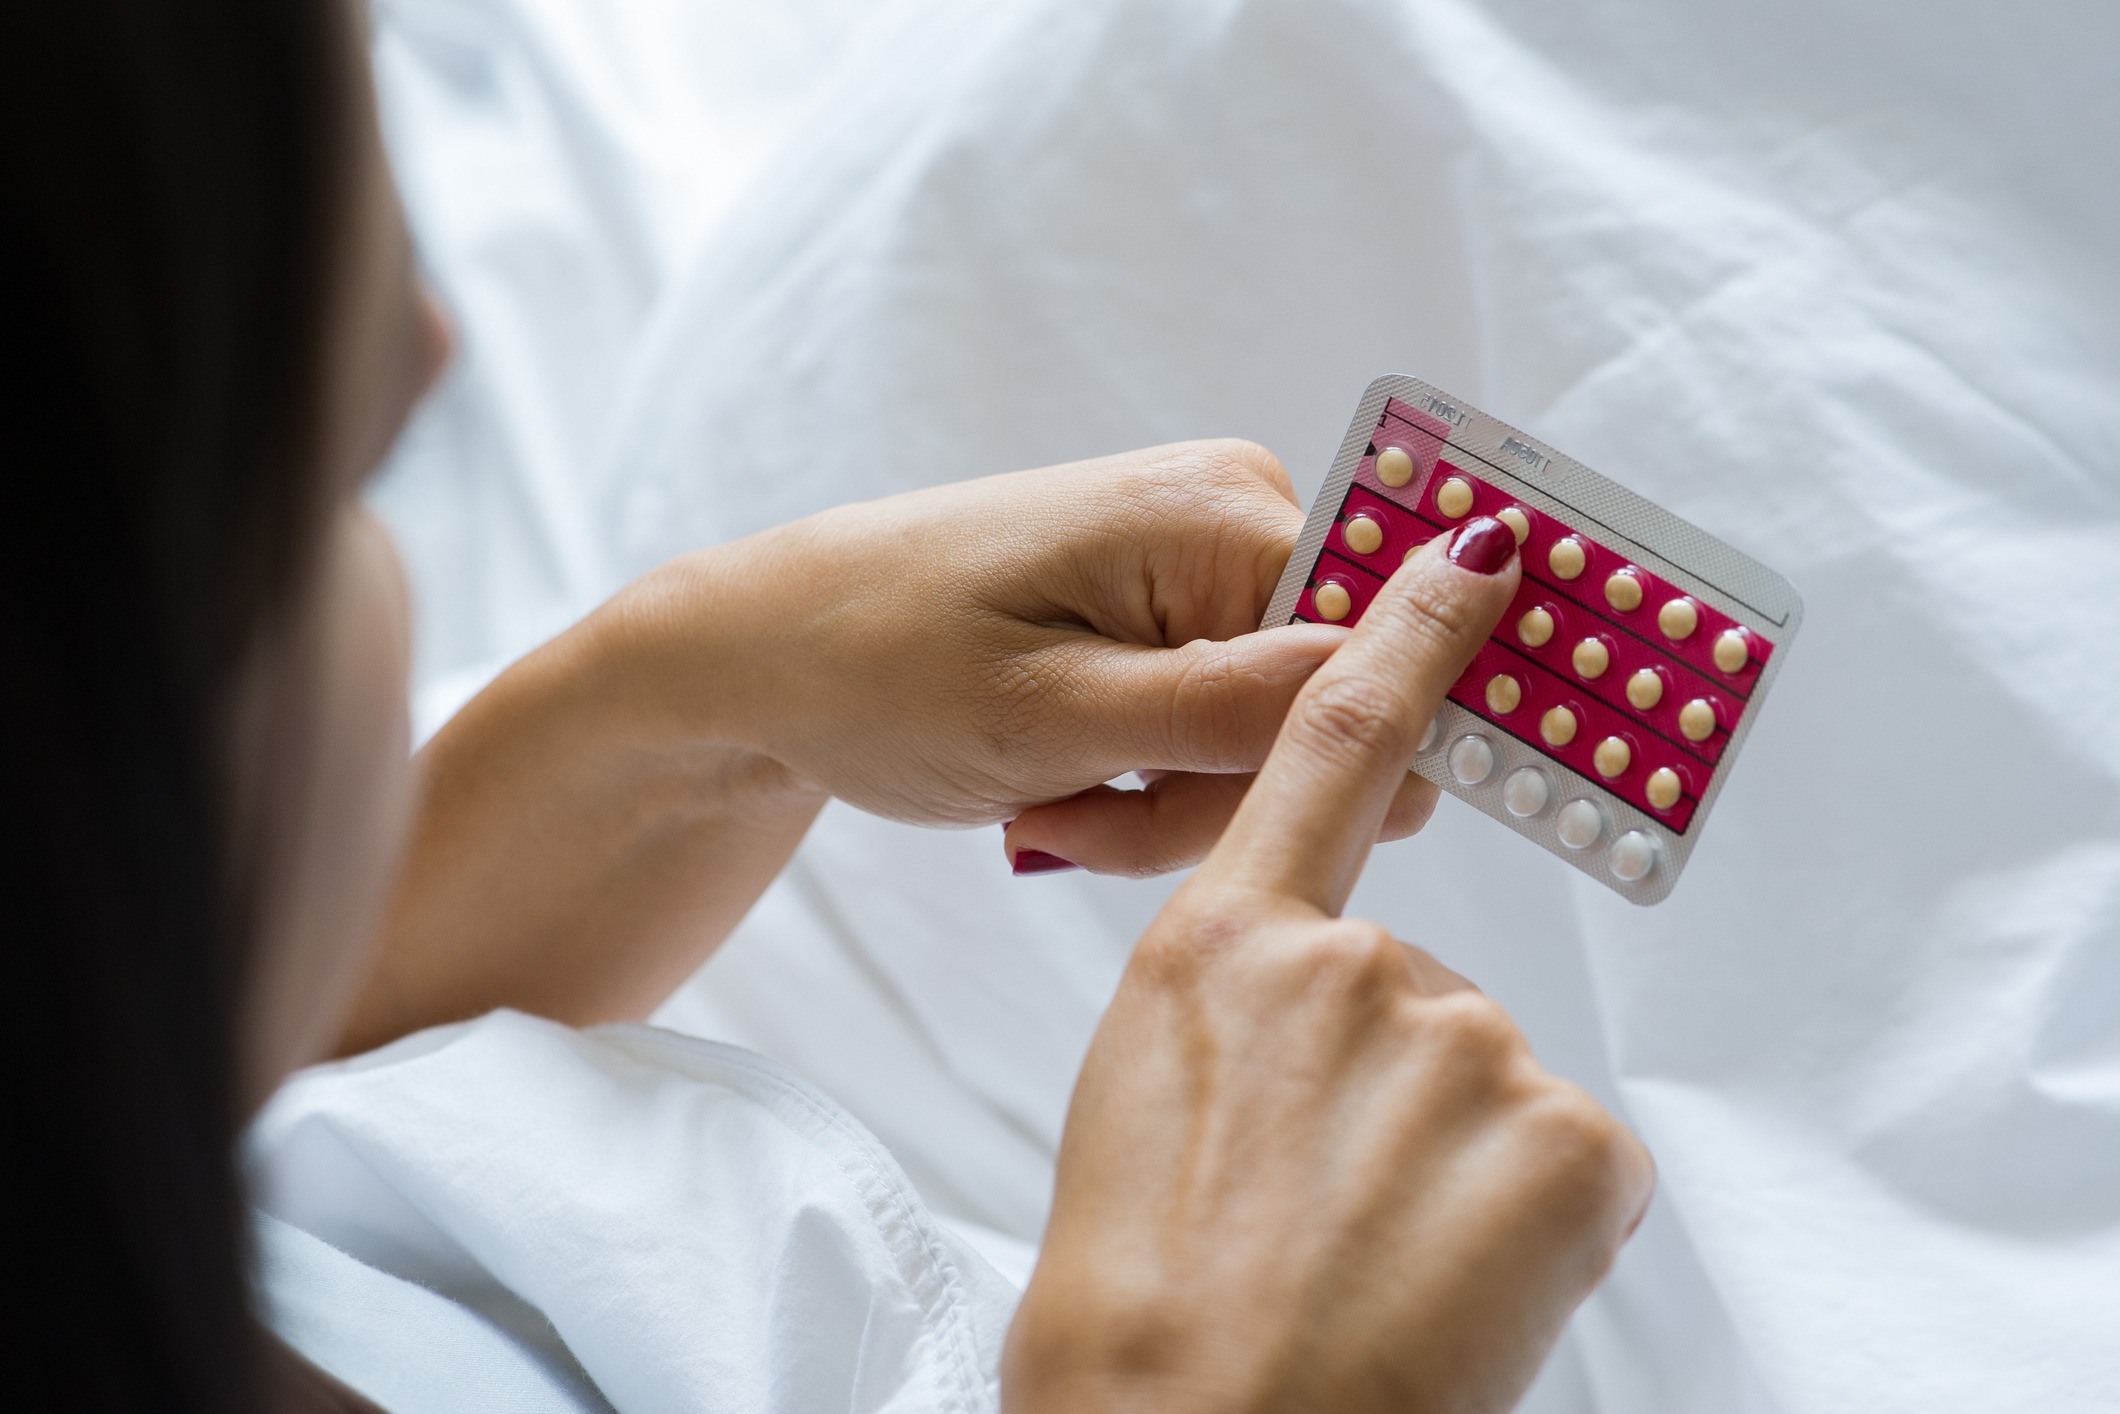 Changer de contraception sans risque - Doctissimo